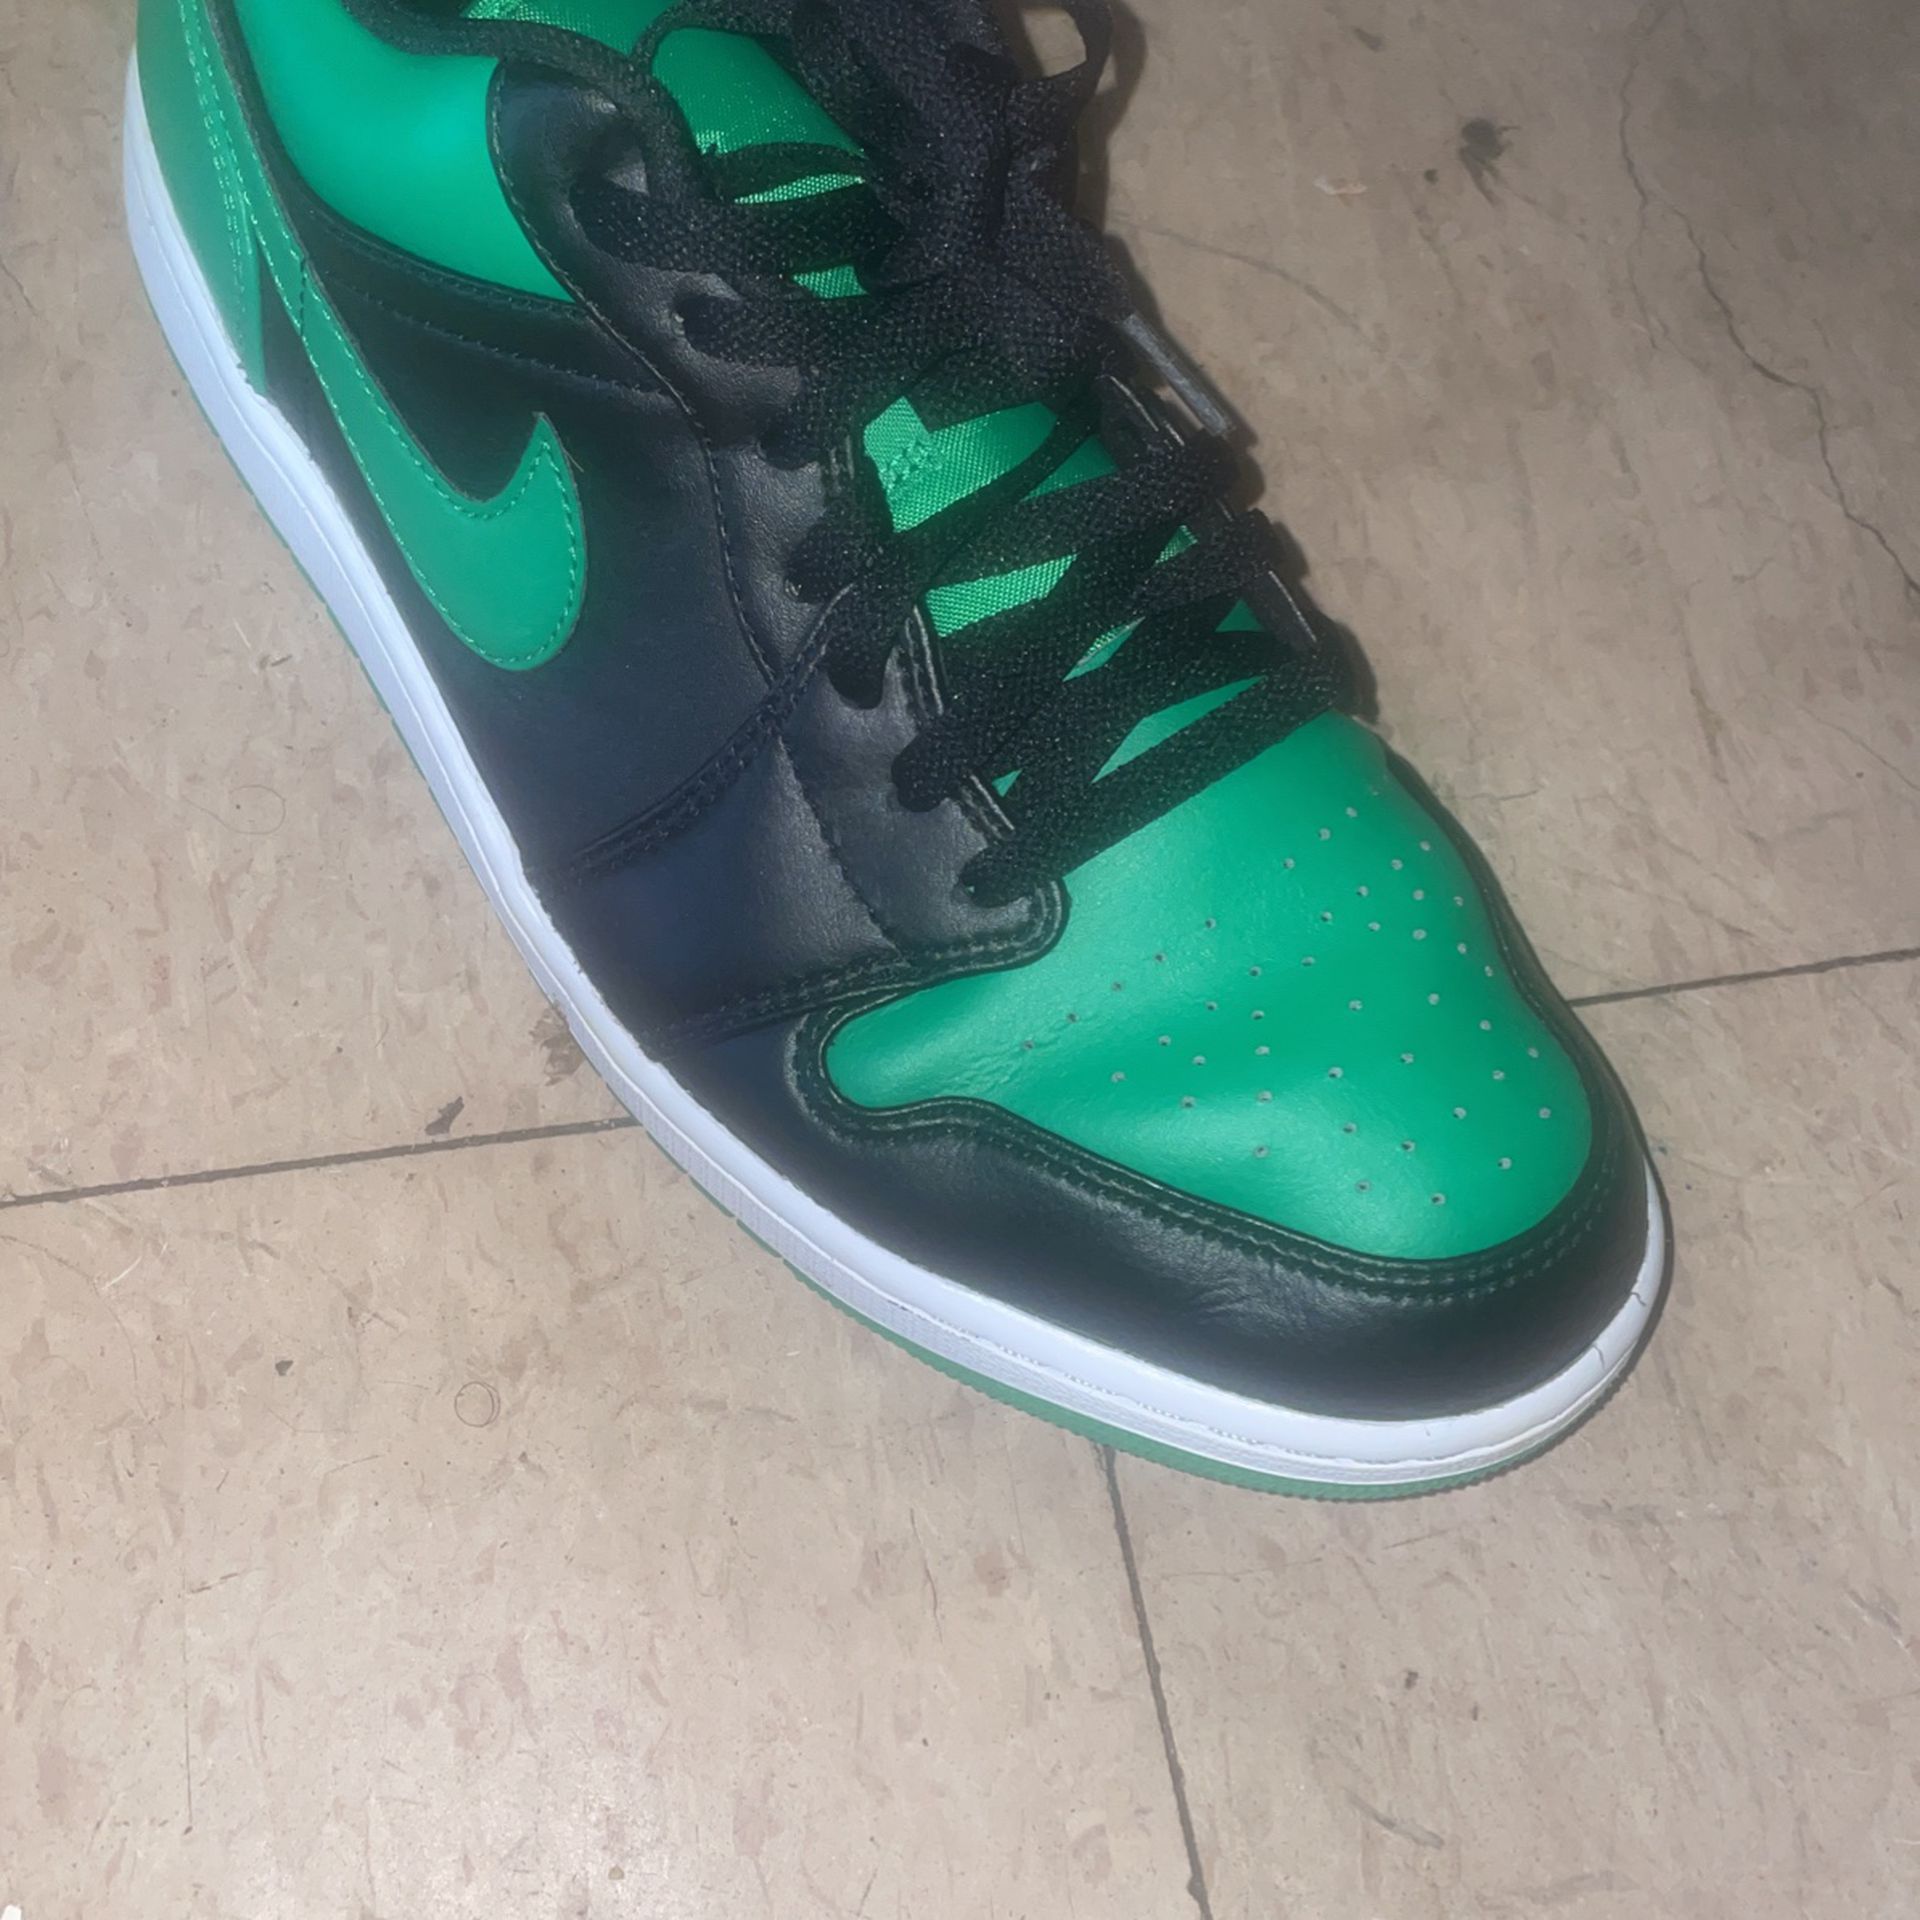 Jordan’s Green And Black 